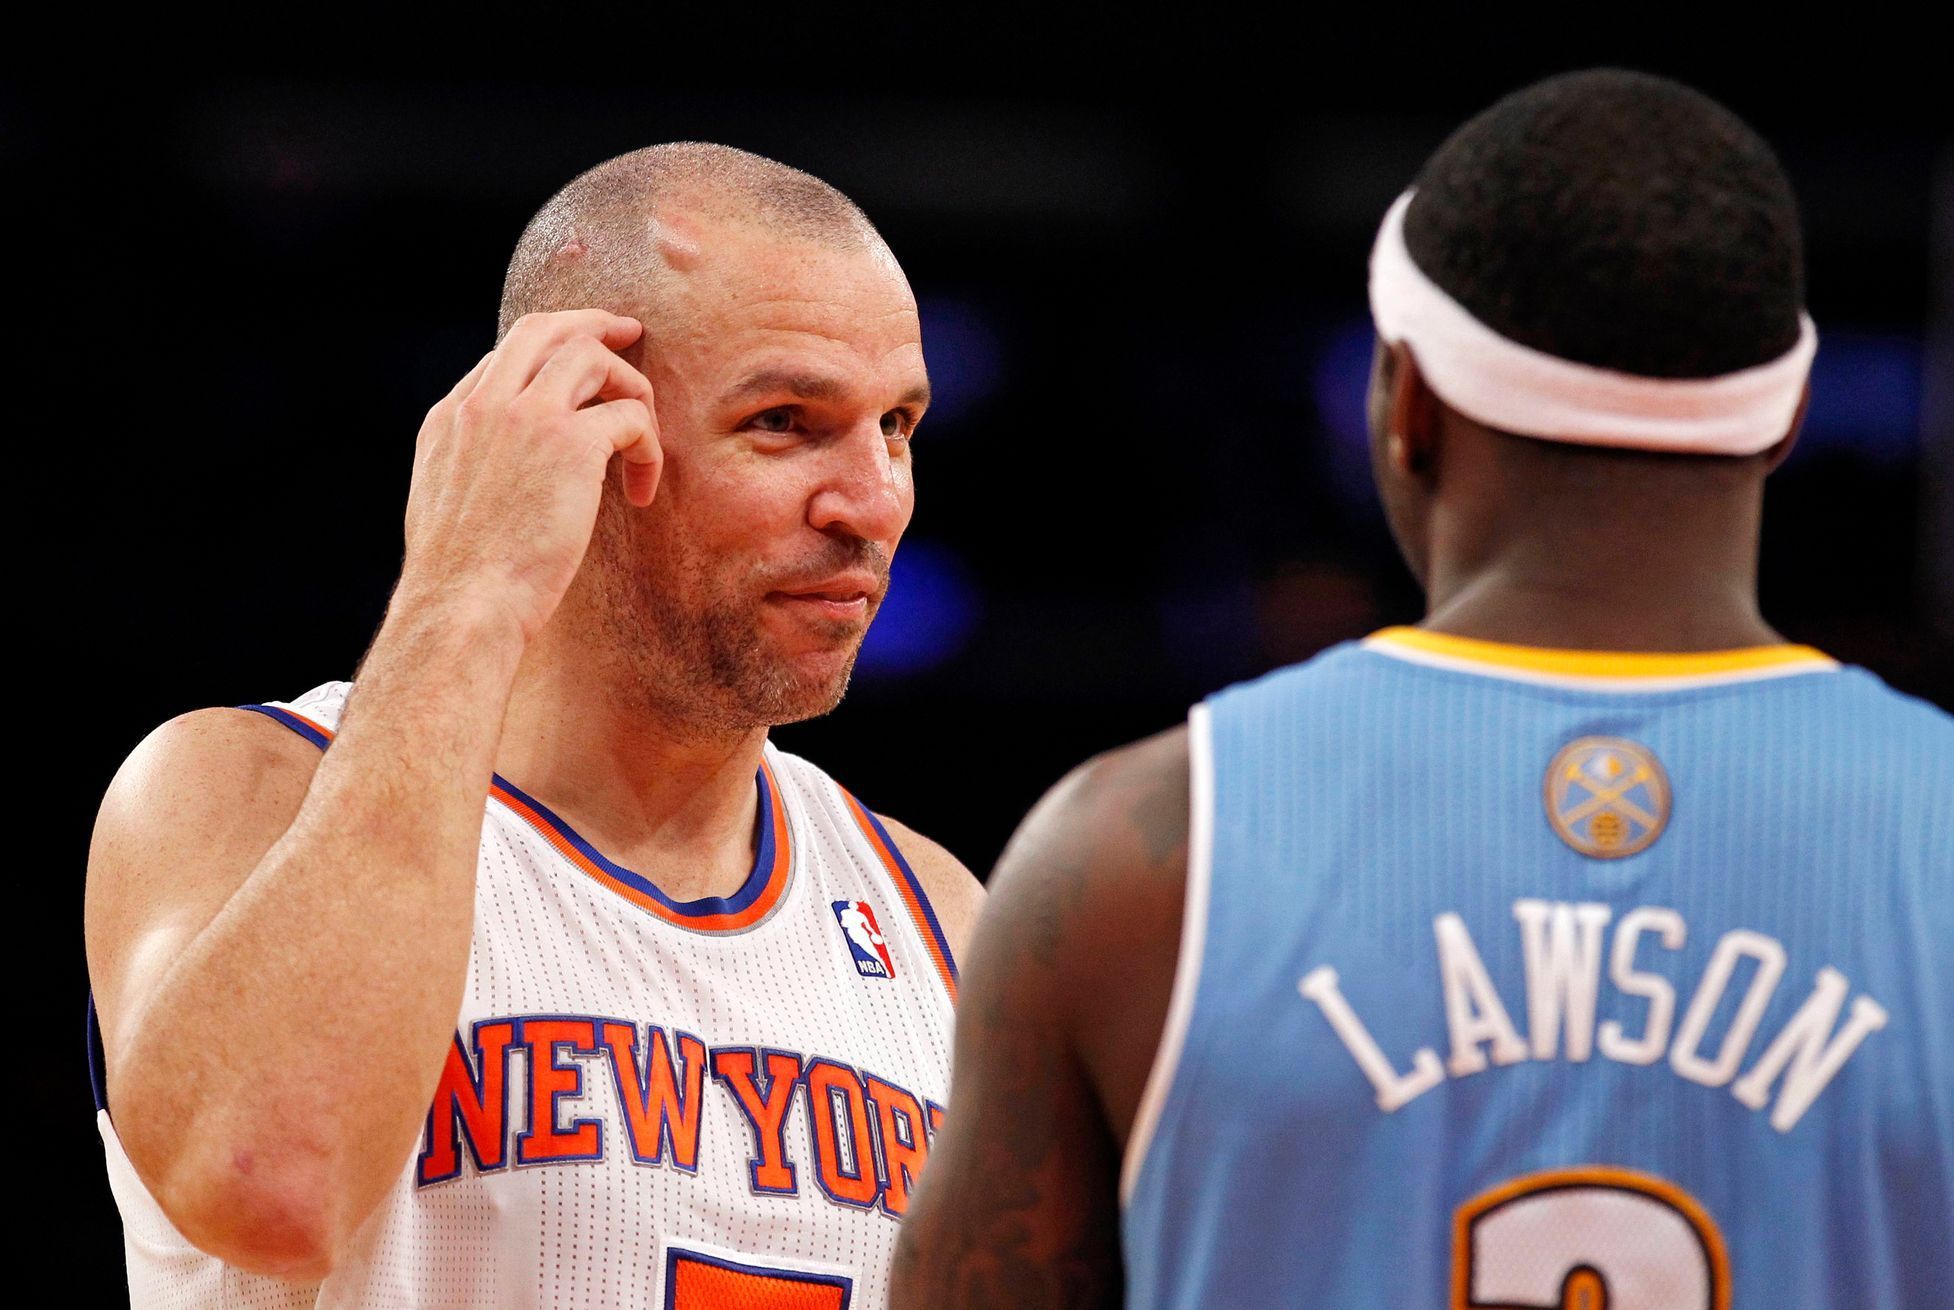 Hráč New York Knicks Jason Kidd v rozhovoru s Tyem Lawson v dresu Denveru